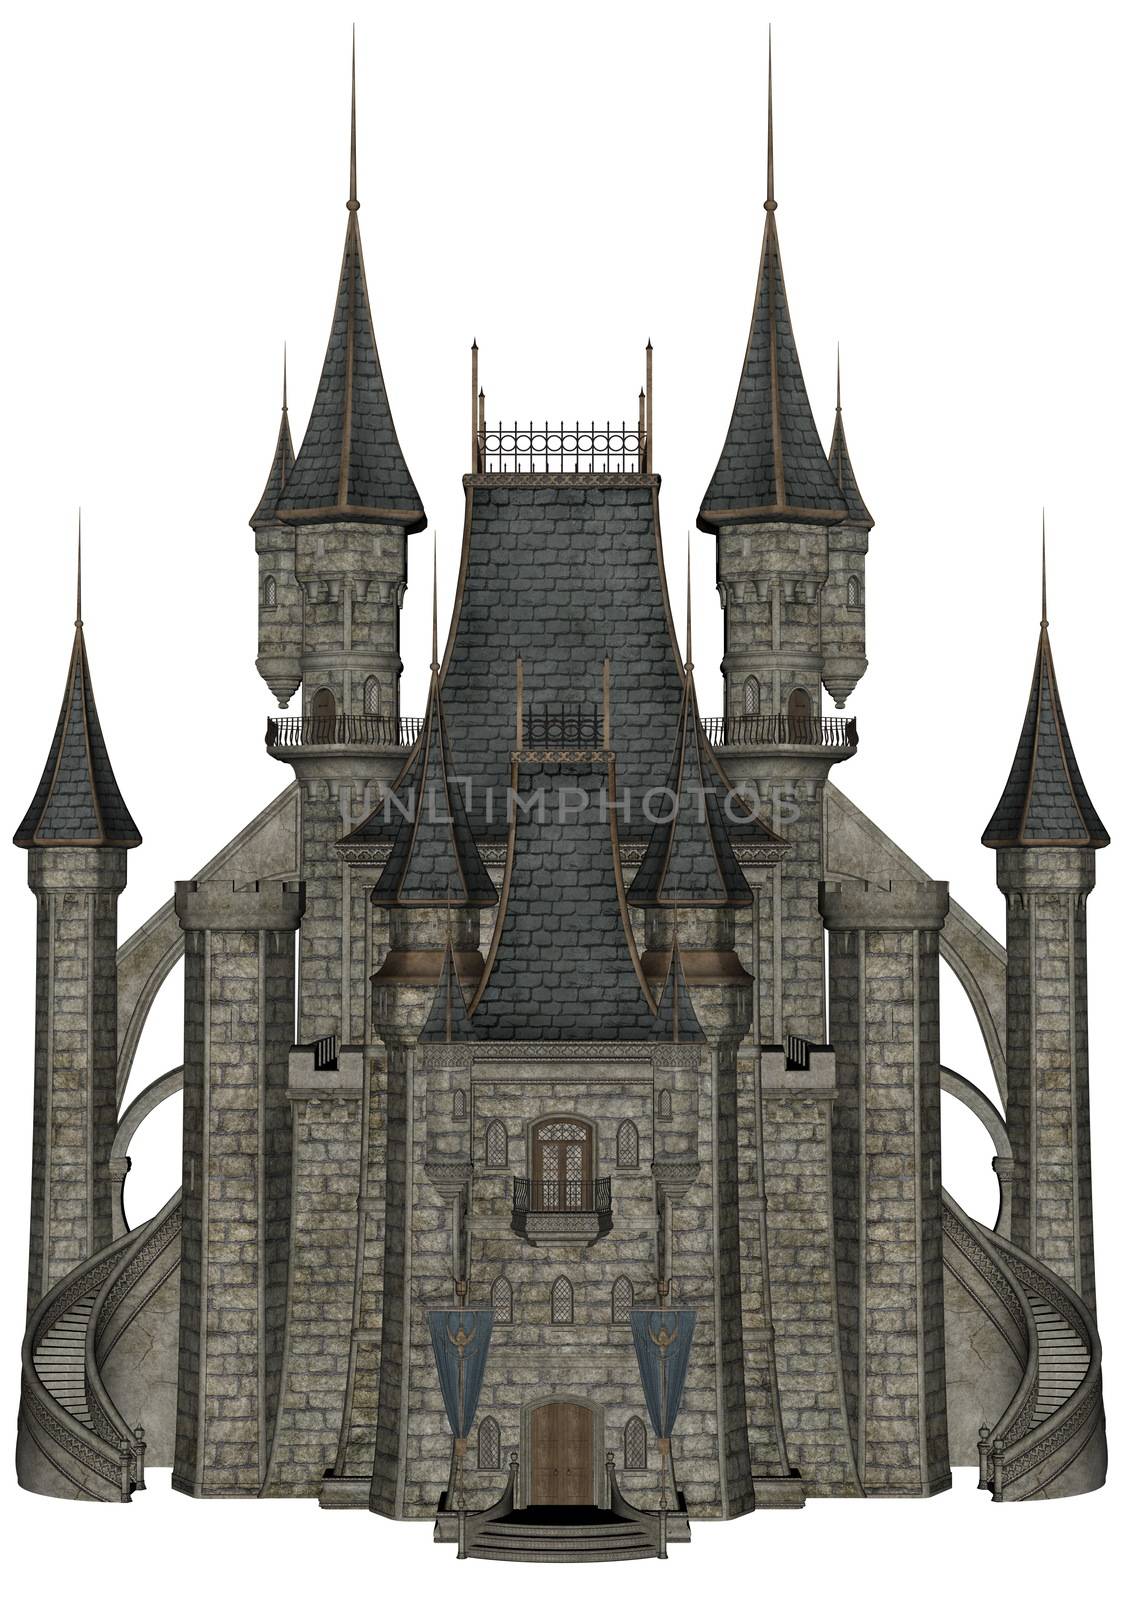 Castle - 3D render by Elenaphotos21